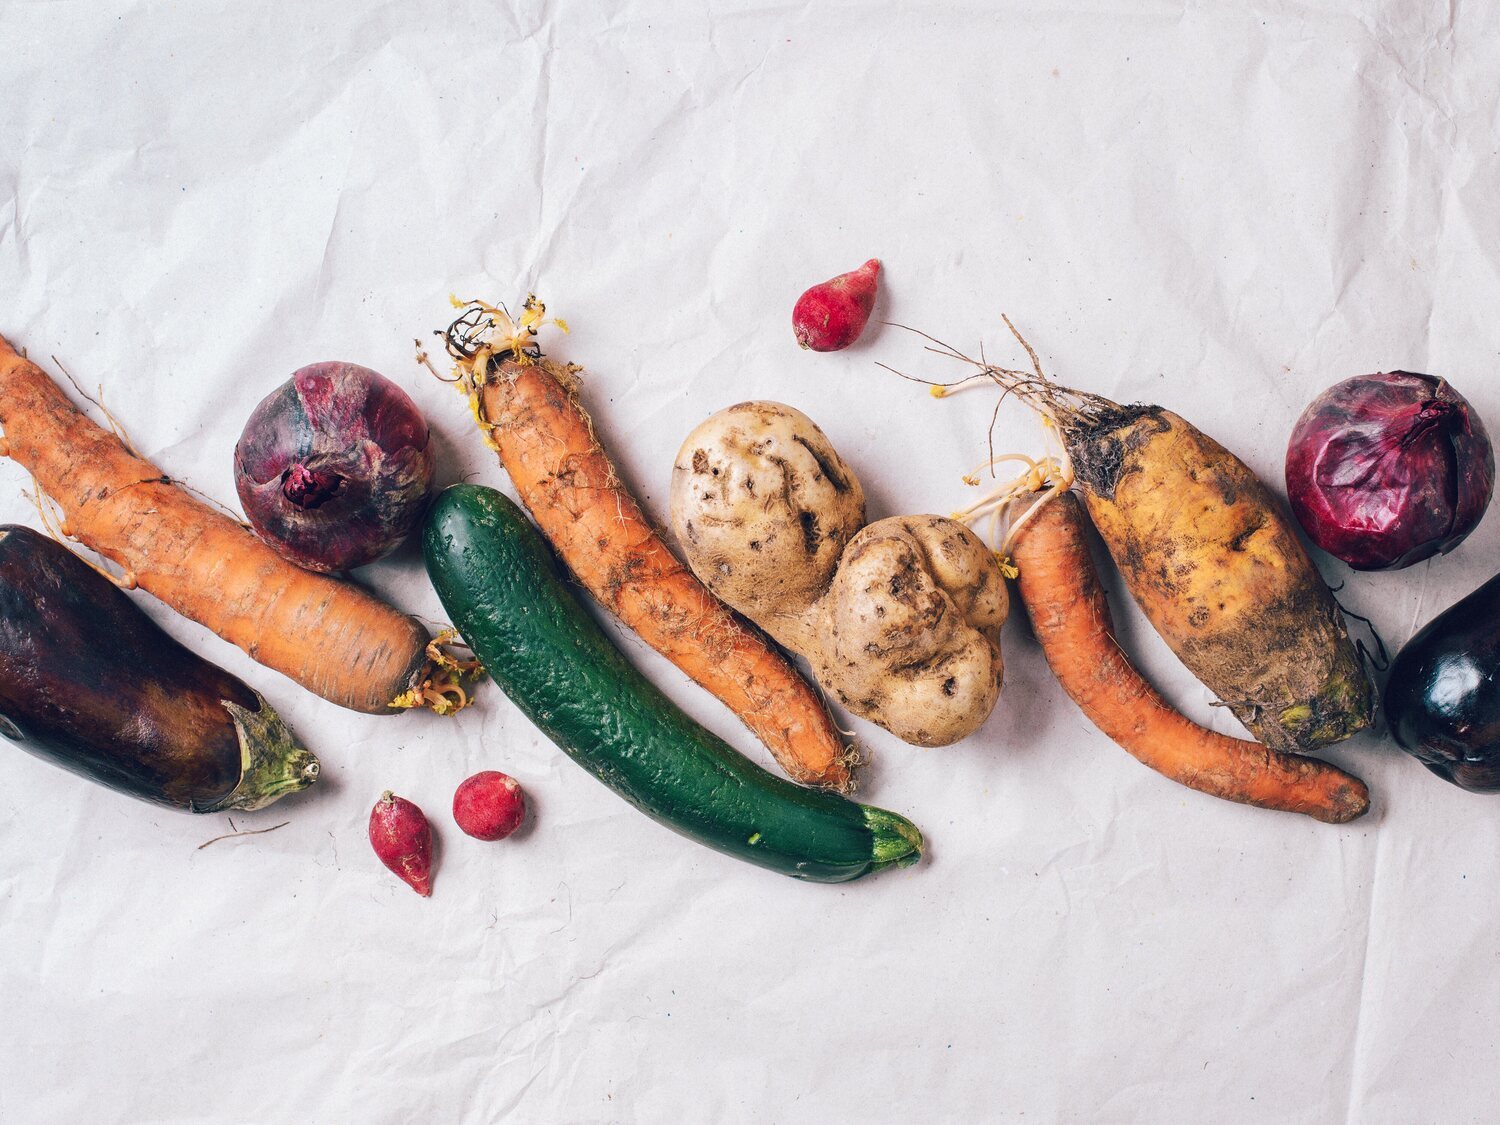 Intoxicación alimentaria: estas son las señales que debes buscar en la verdura